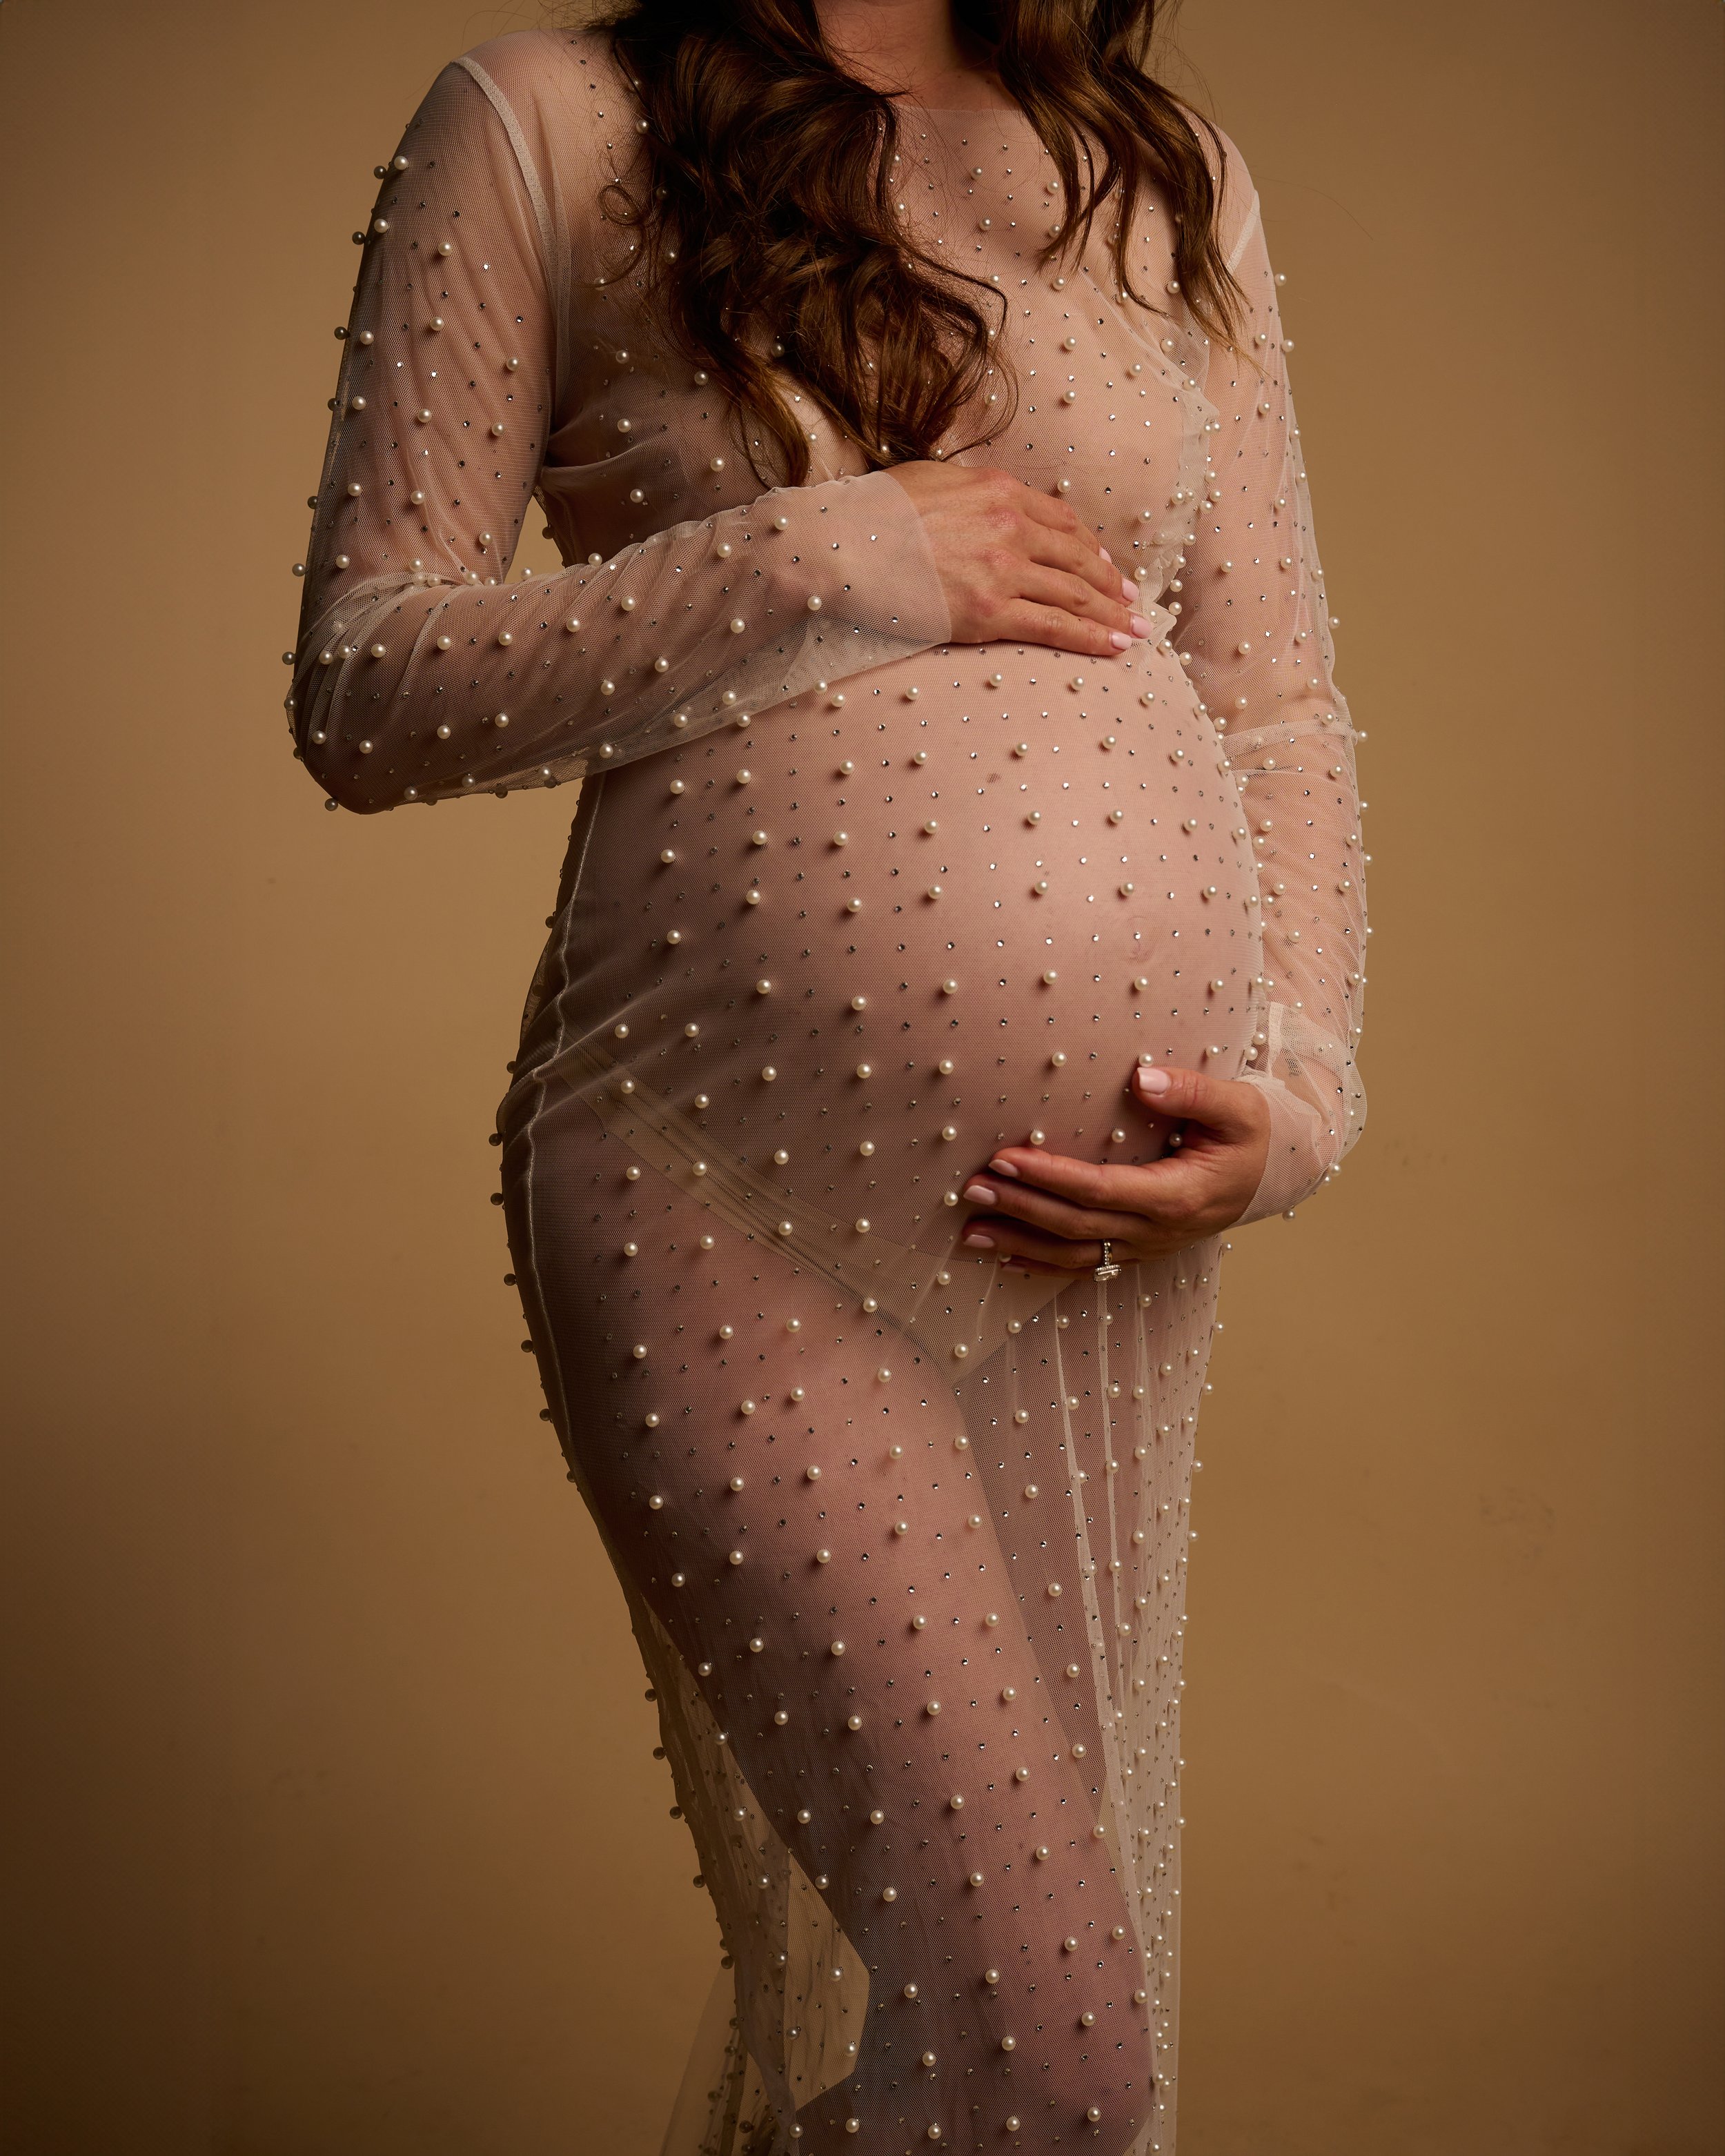 Calvin Klein Inspired Maternity Shoot000009.jpg